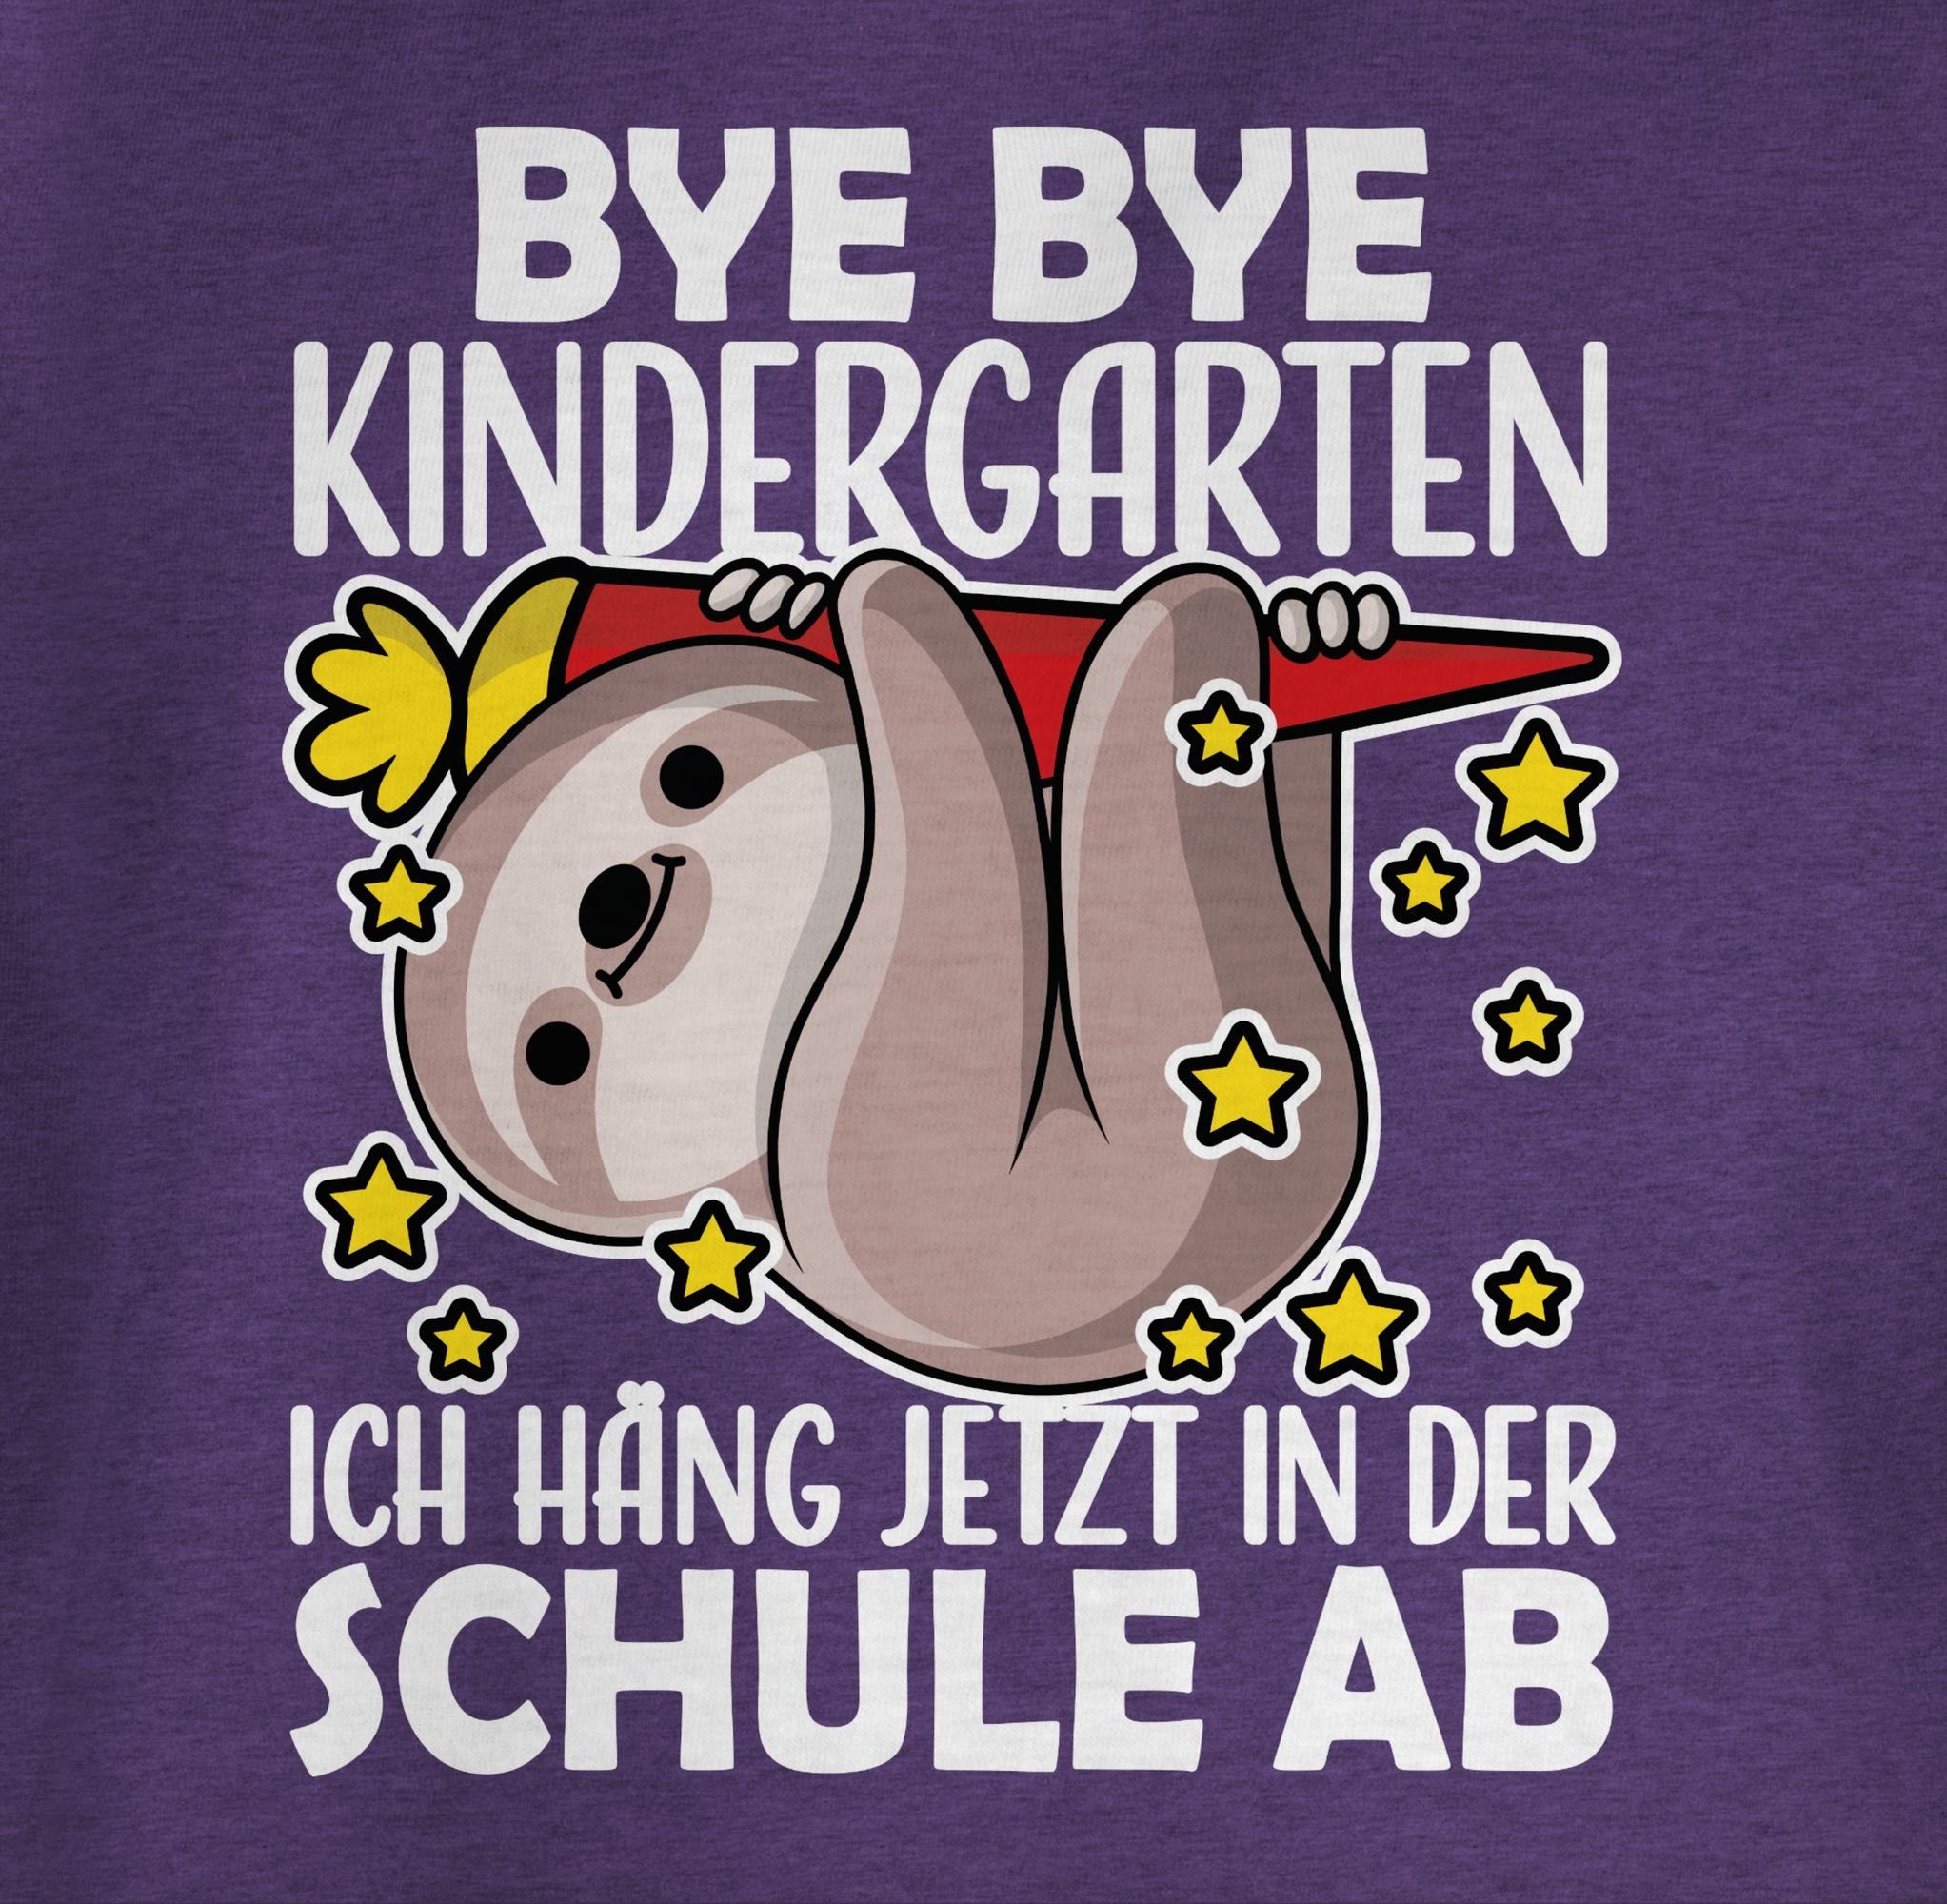 Lila Shirtracer Bye Mädchen Kindergarten T-Shirt Bye 2 Einschulung Meliert